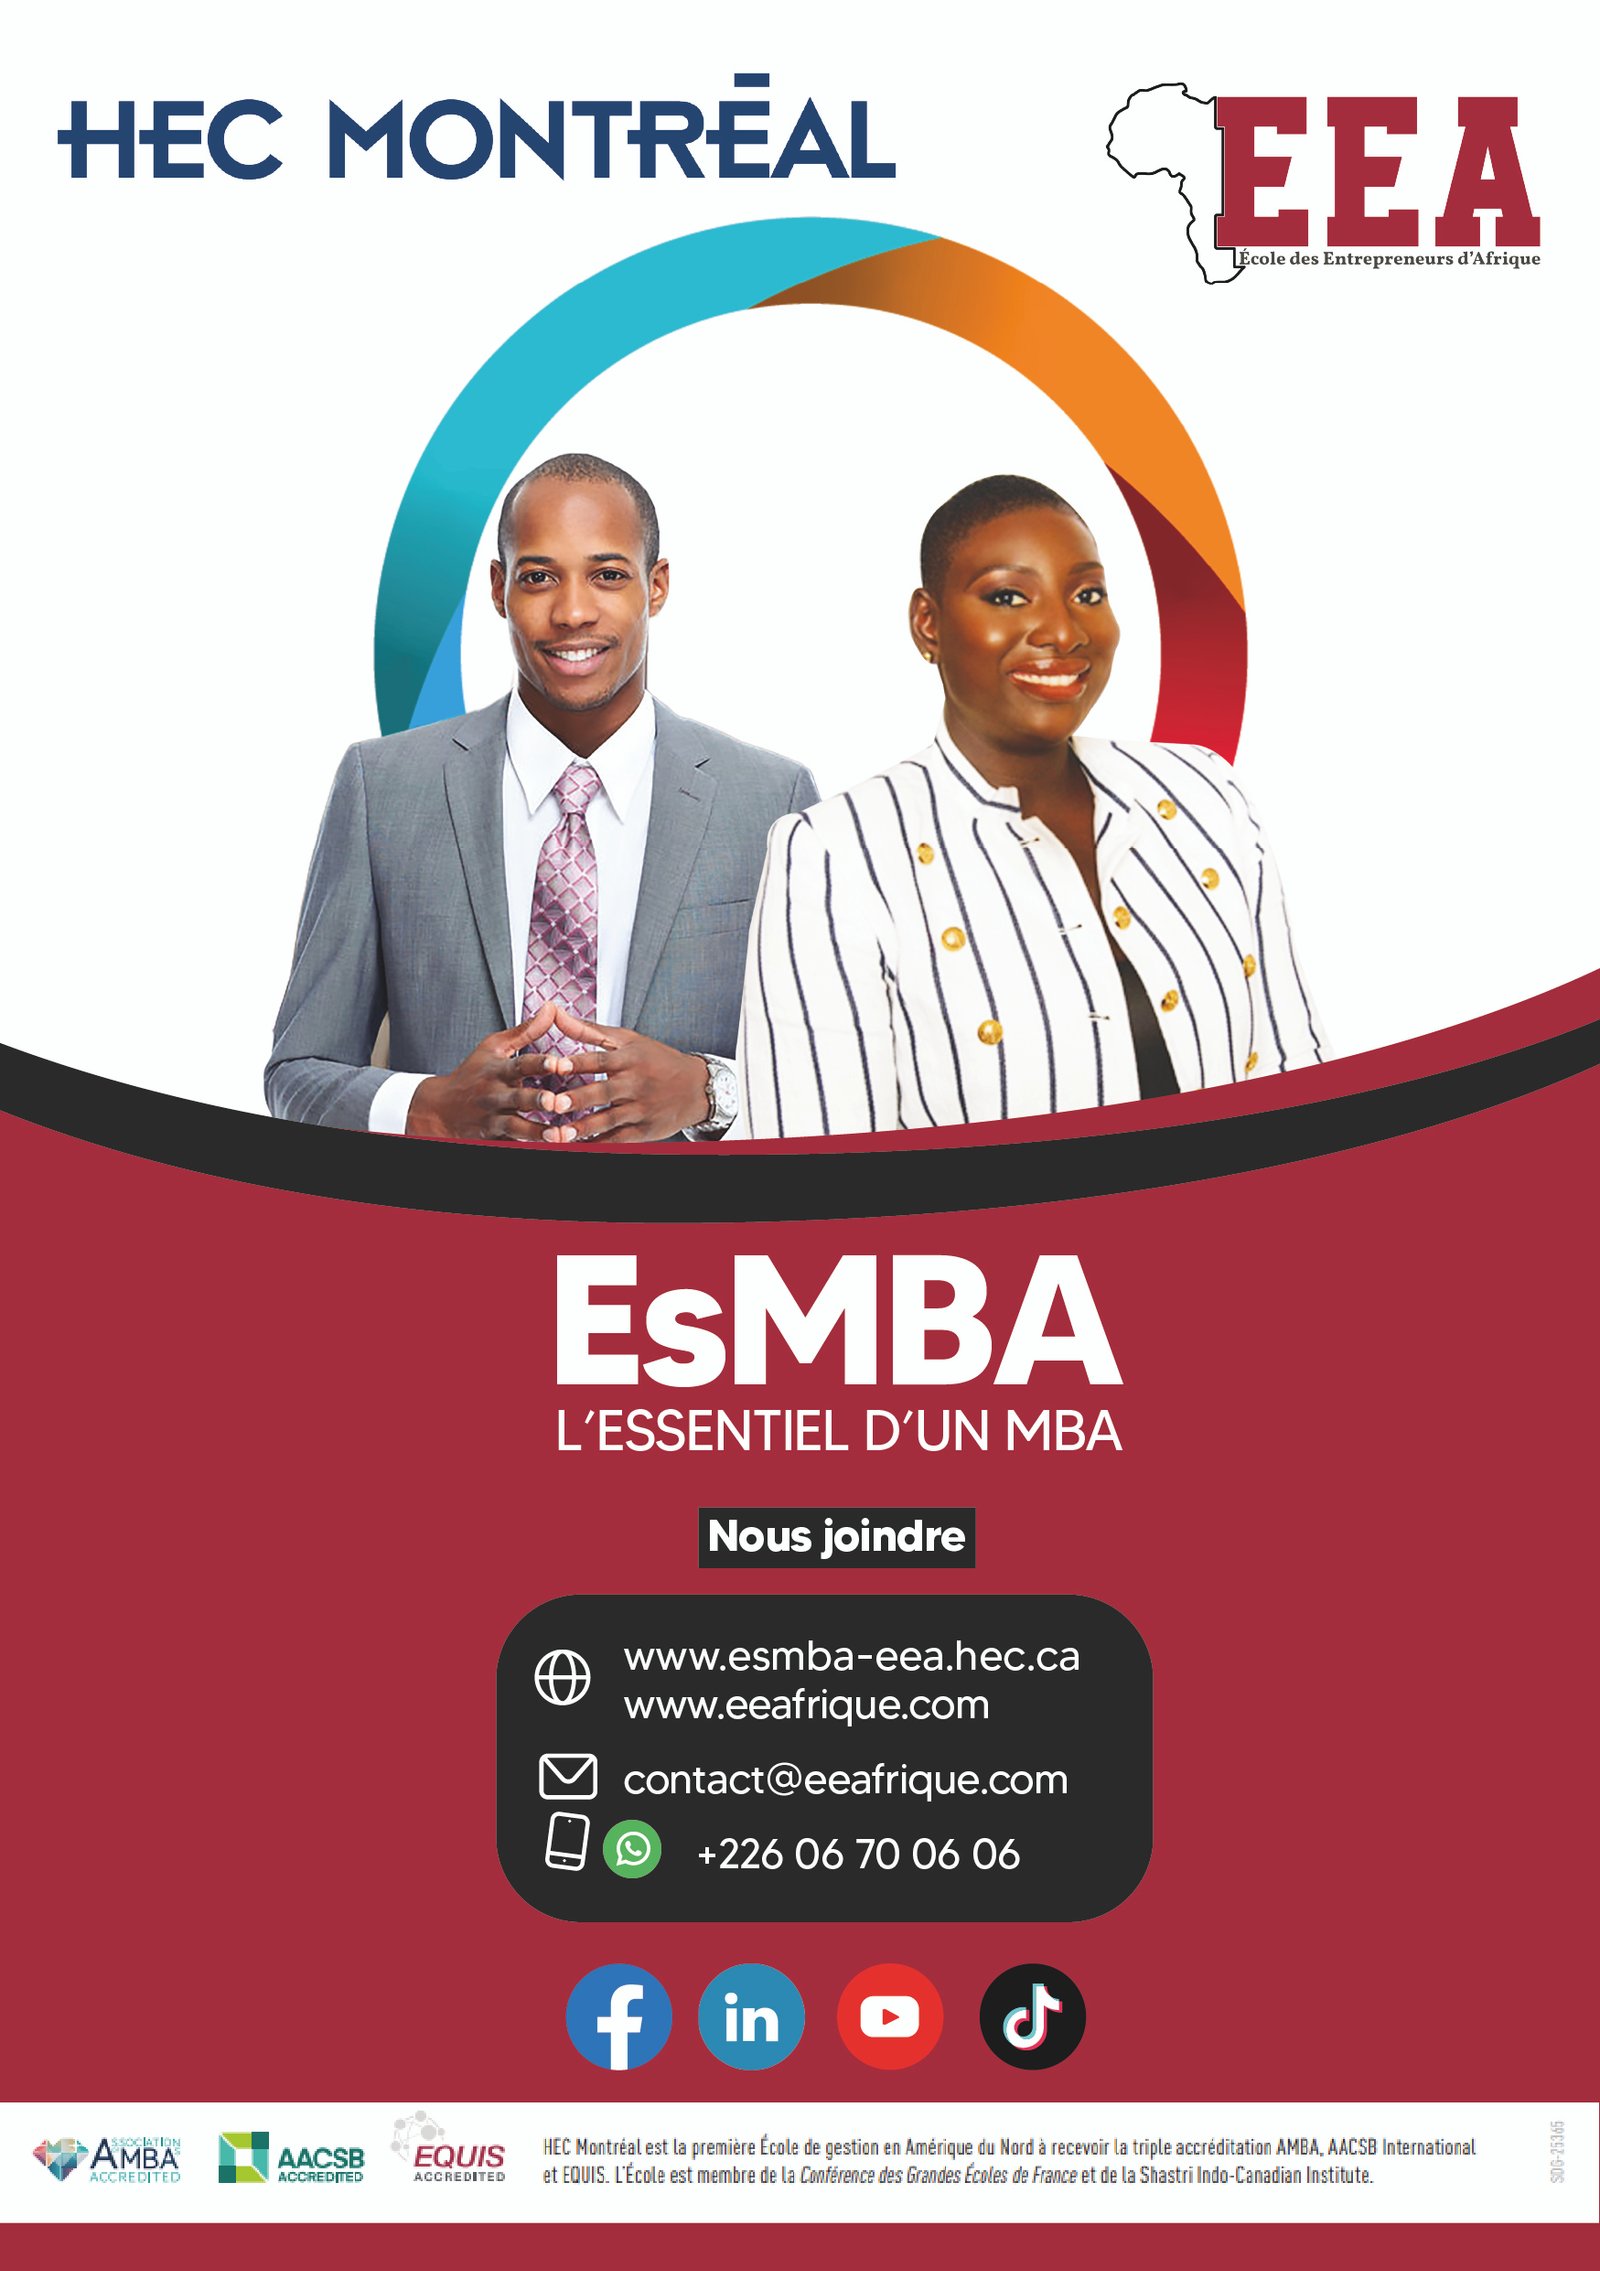 L’ESSENTIEL D’UN MBA (EsMBA)